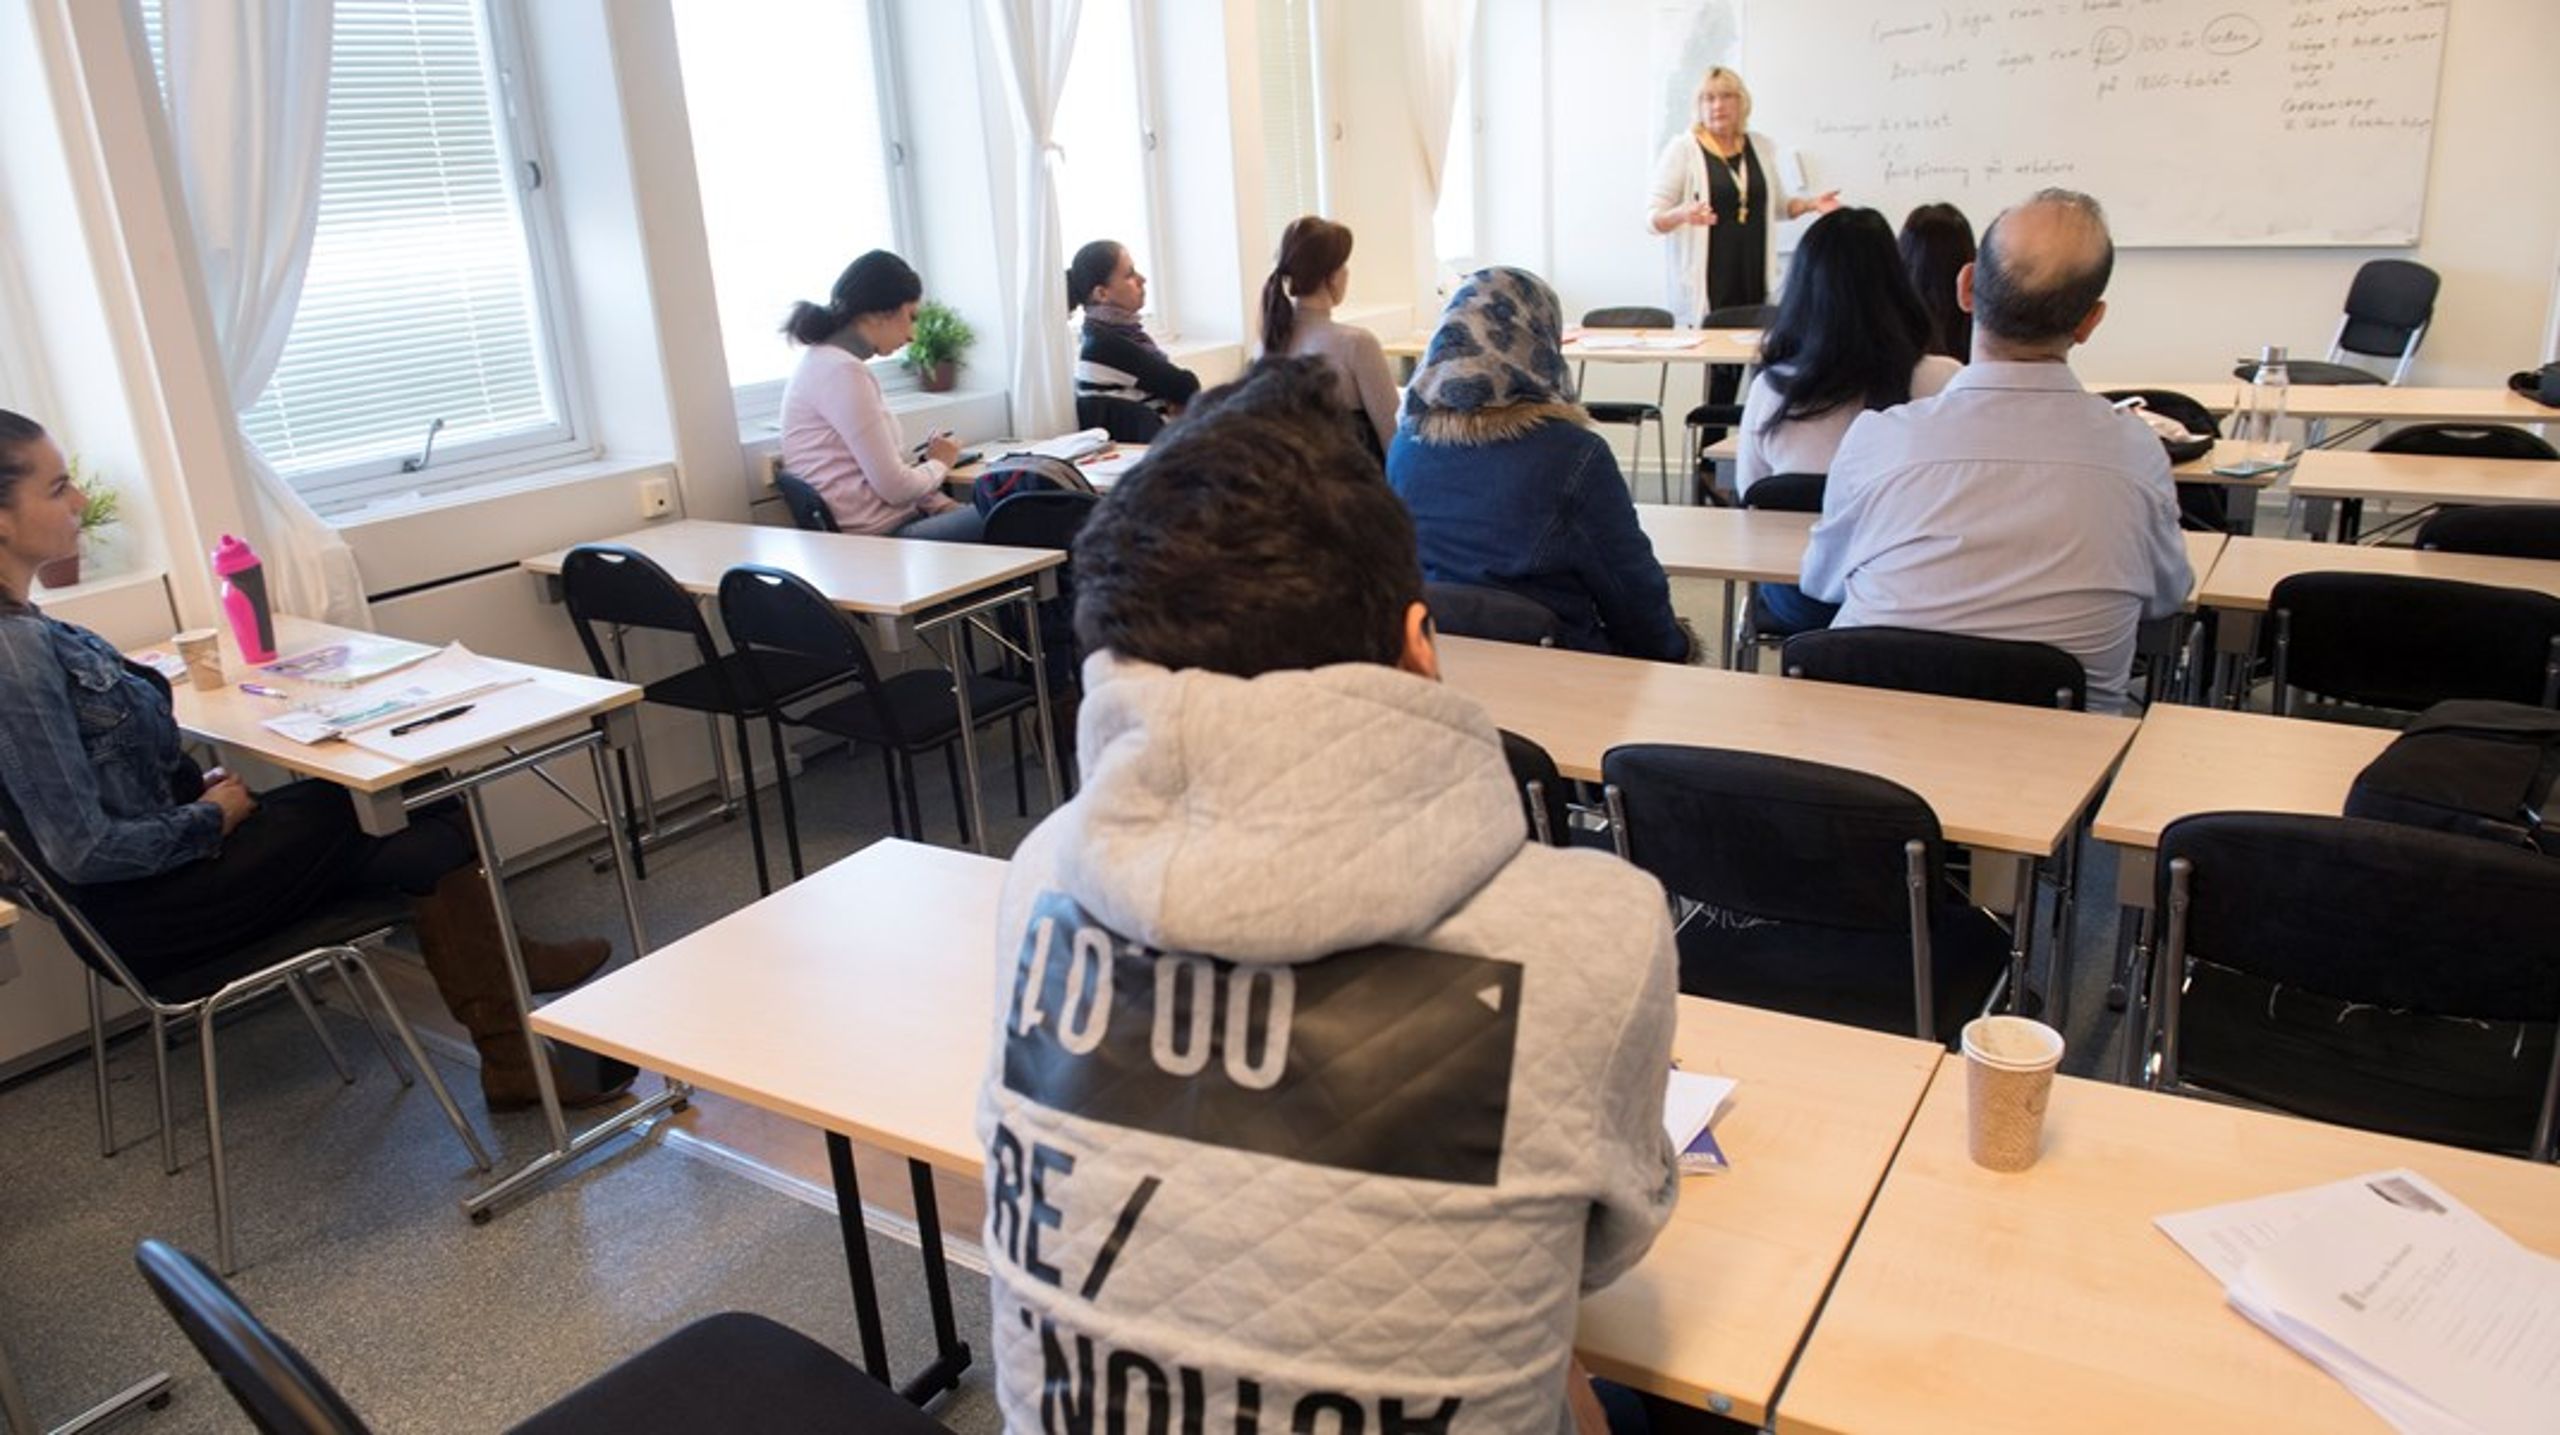 Hittills har regeringen&nbsp;inte presenterat&nbsp;ett enda initiativ för att ge invandrarna möjlighet att bli bättre på det svenska språket, skriver debattörerna.